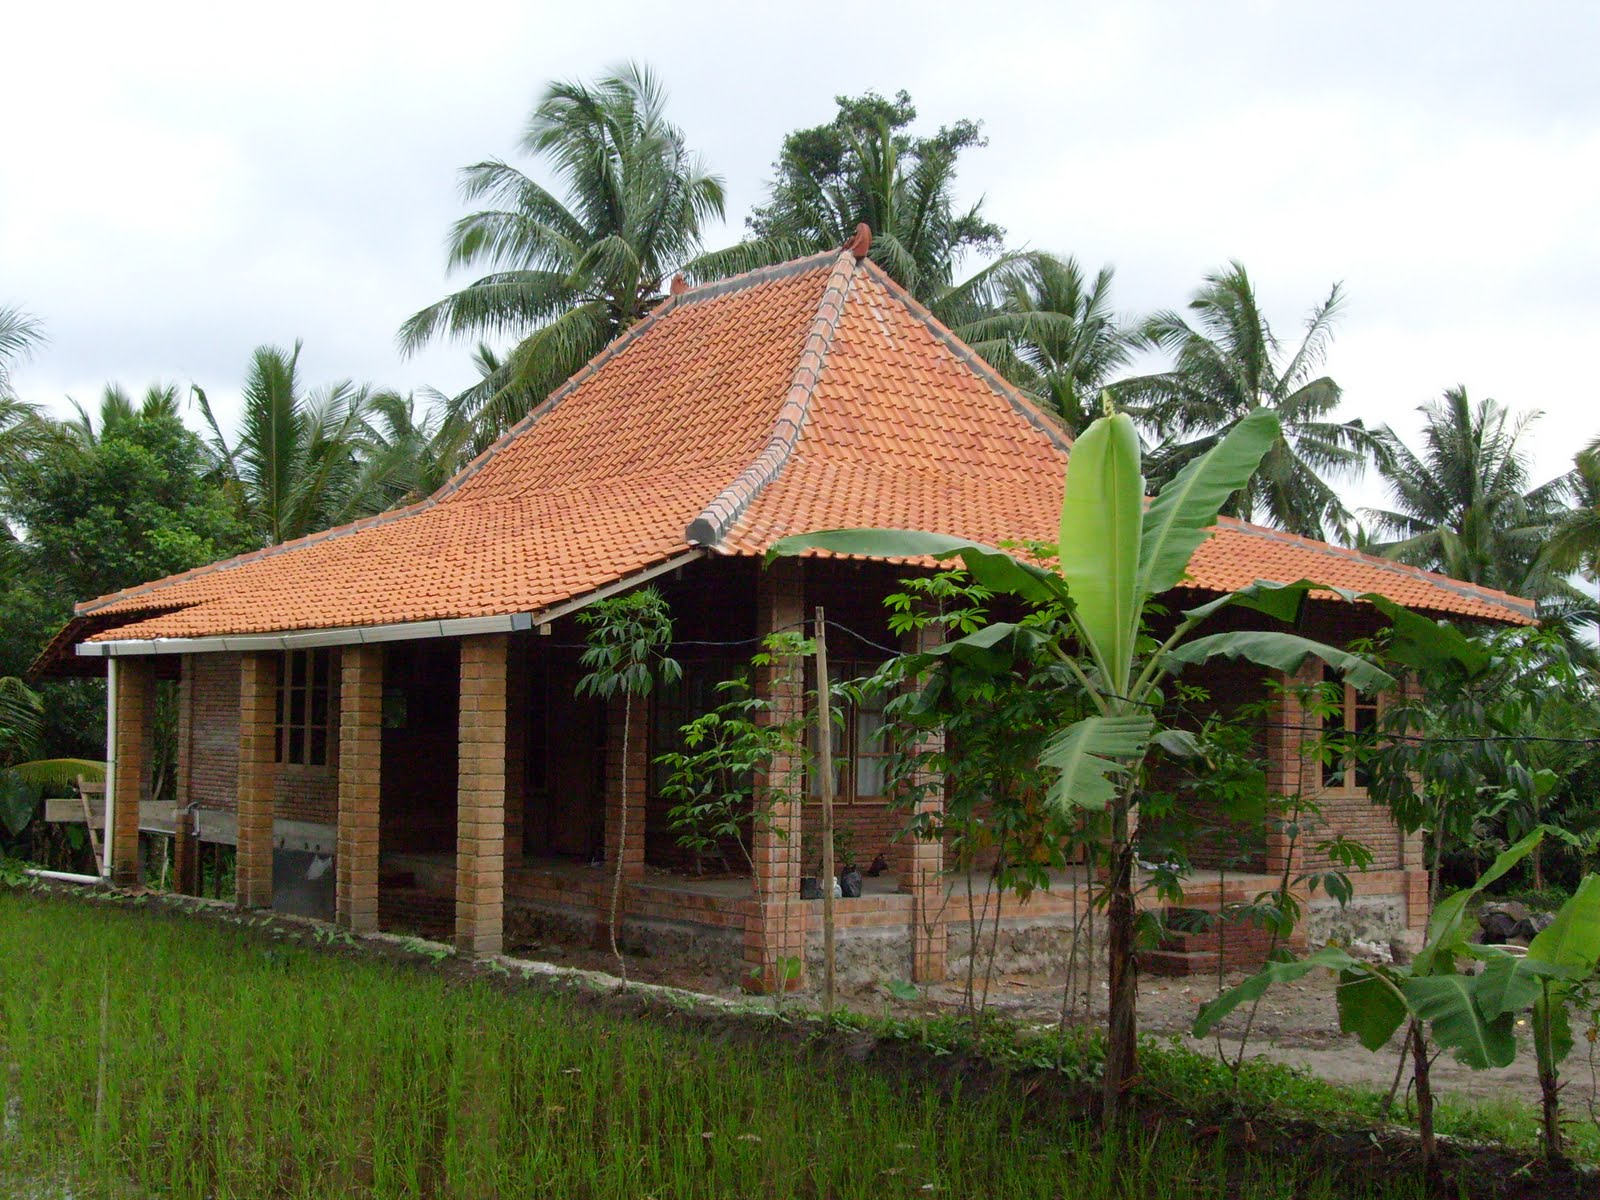 Cemerlang Desain Rumah Sederhana Jawa 82 Bangun Rumah Merancang Inspirasi dengan Desain Rumah Sederhana Jawa